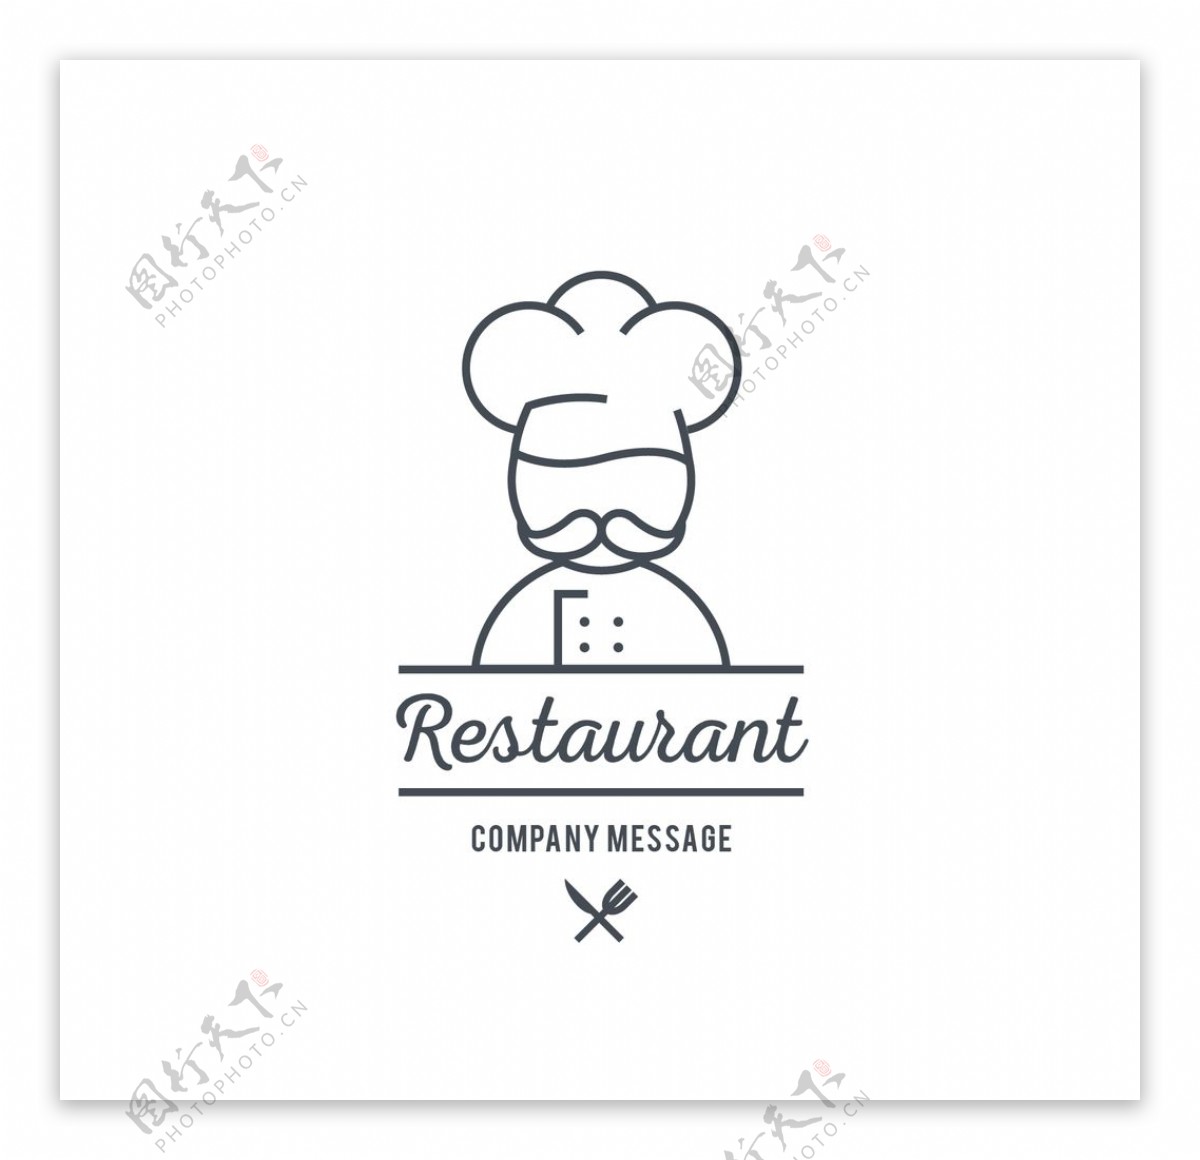 餐厅标志模板